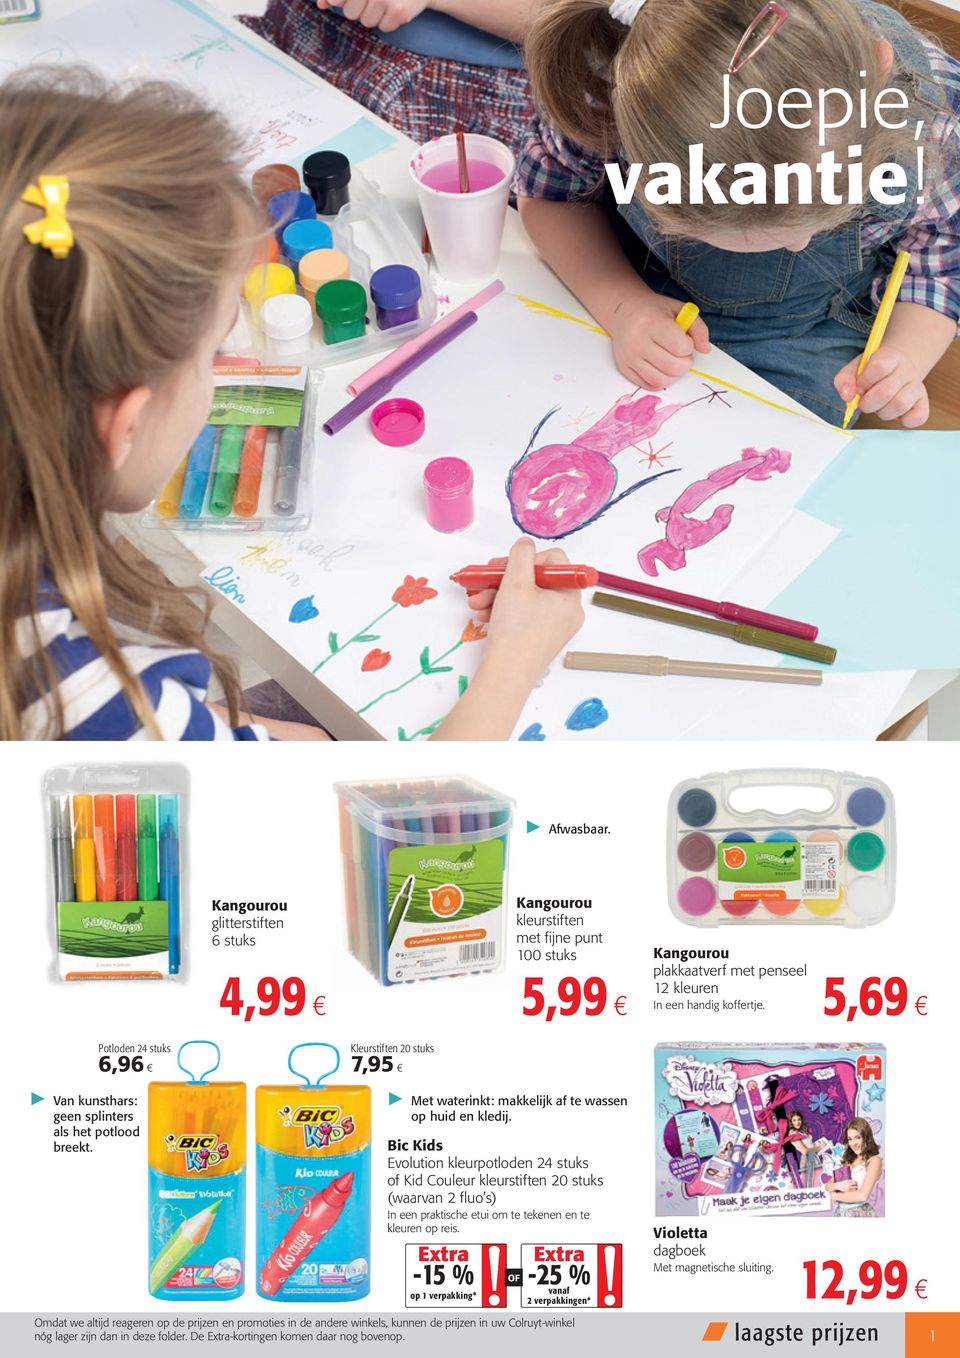 Bic Kids Evolution kleurpotloden 24 stuks of Kid Couleur kleurstiften 20 stuks (waarvan 2 fluo s) In een praktische etui om te tekenen en te kleuren op reis.